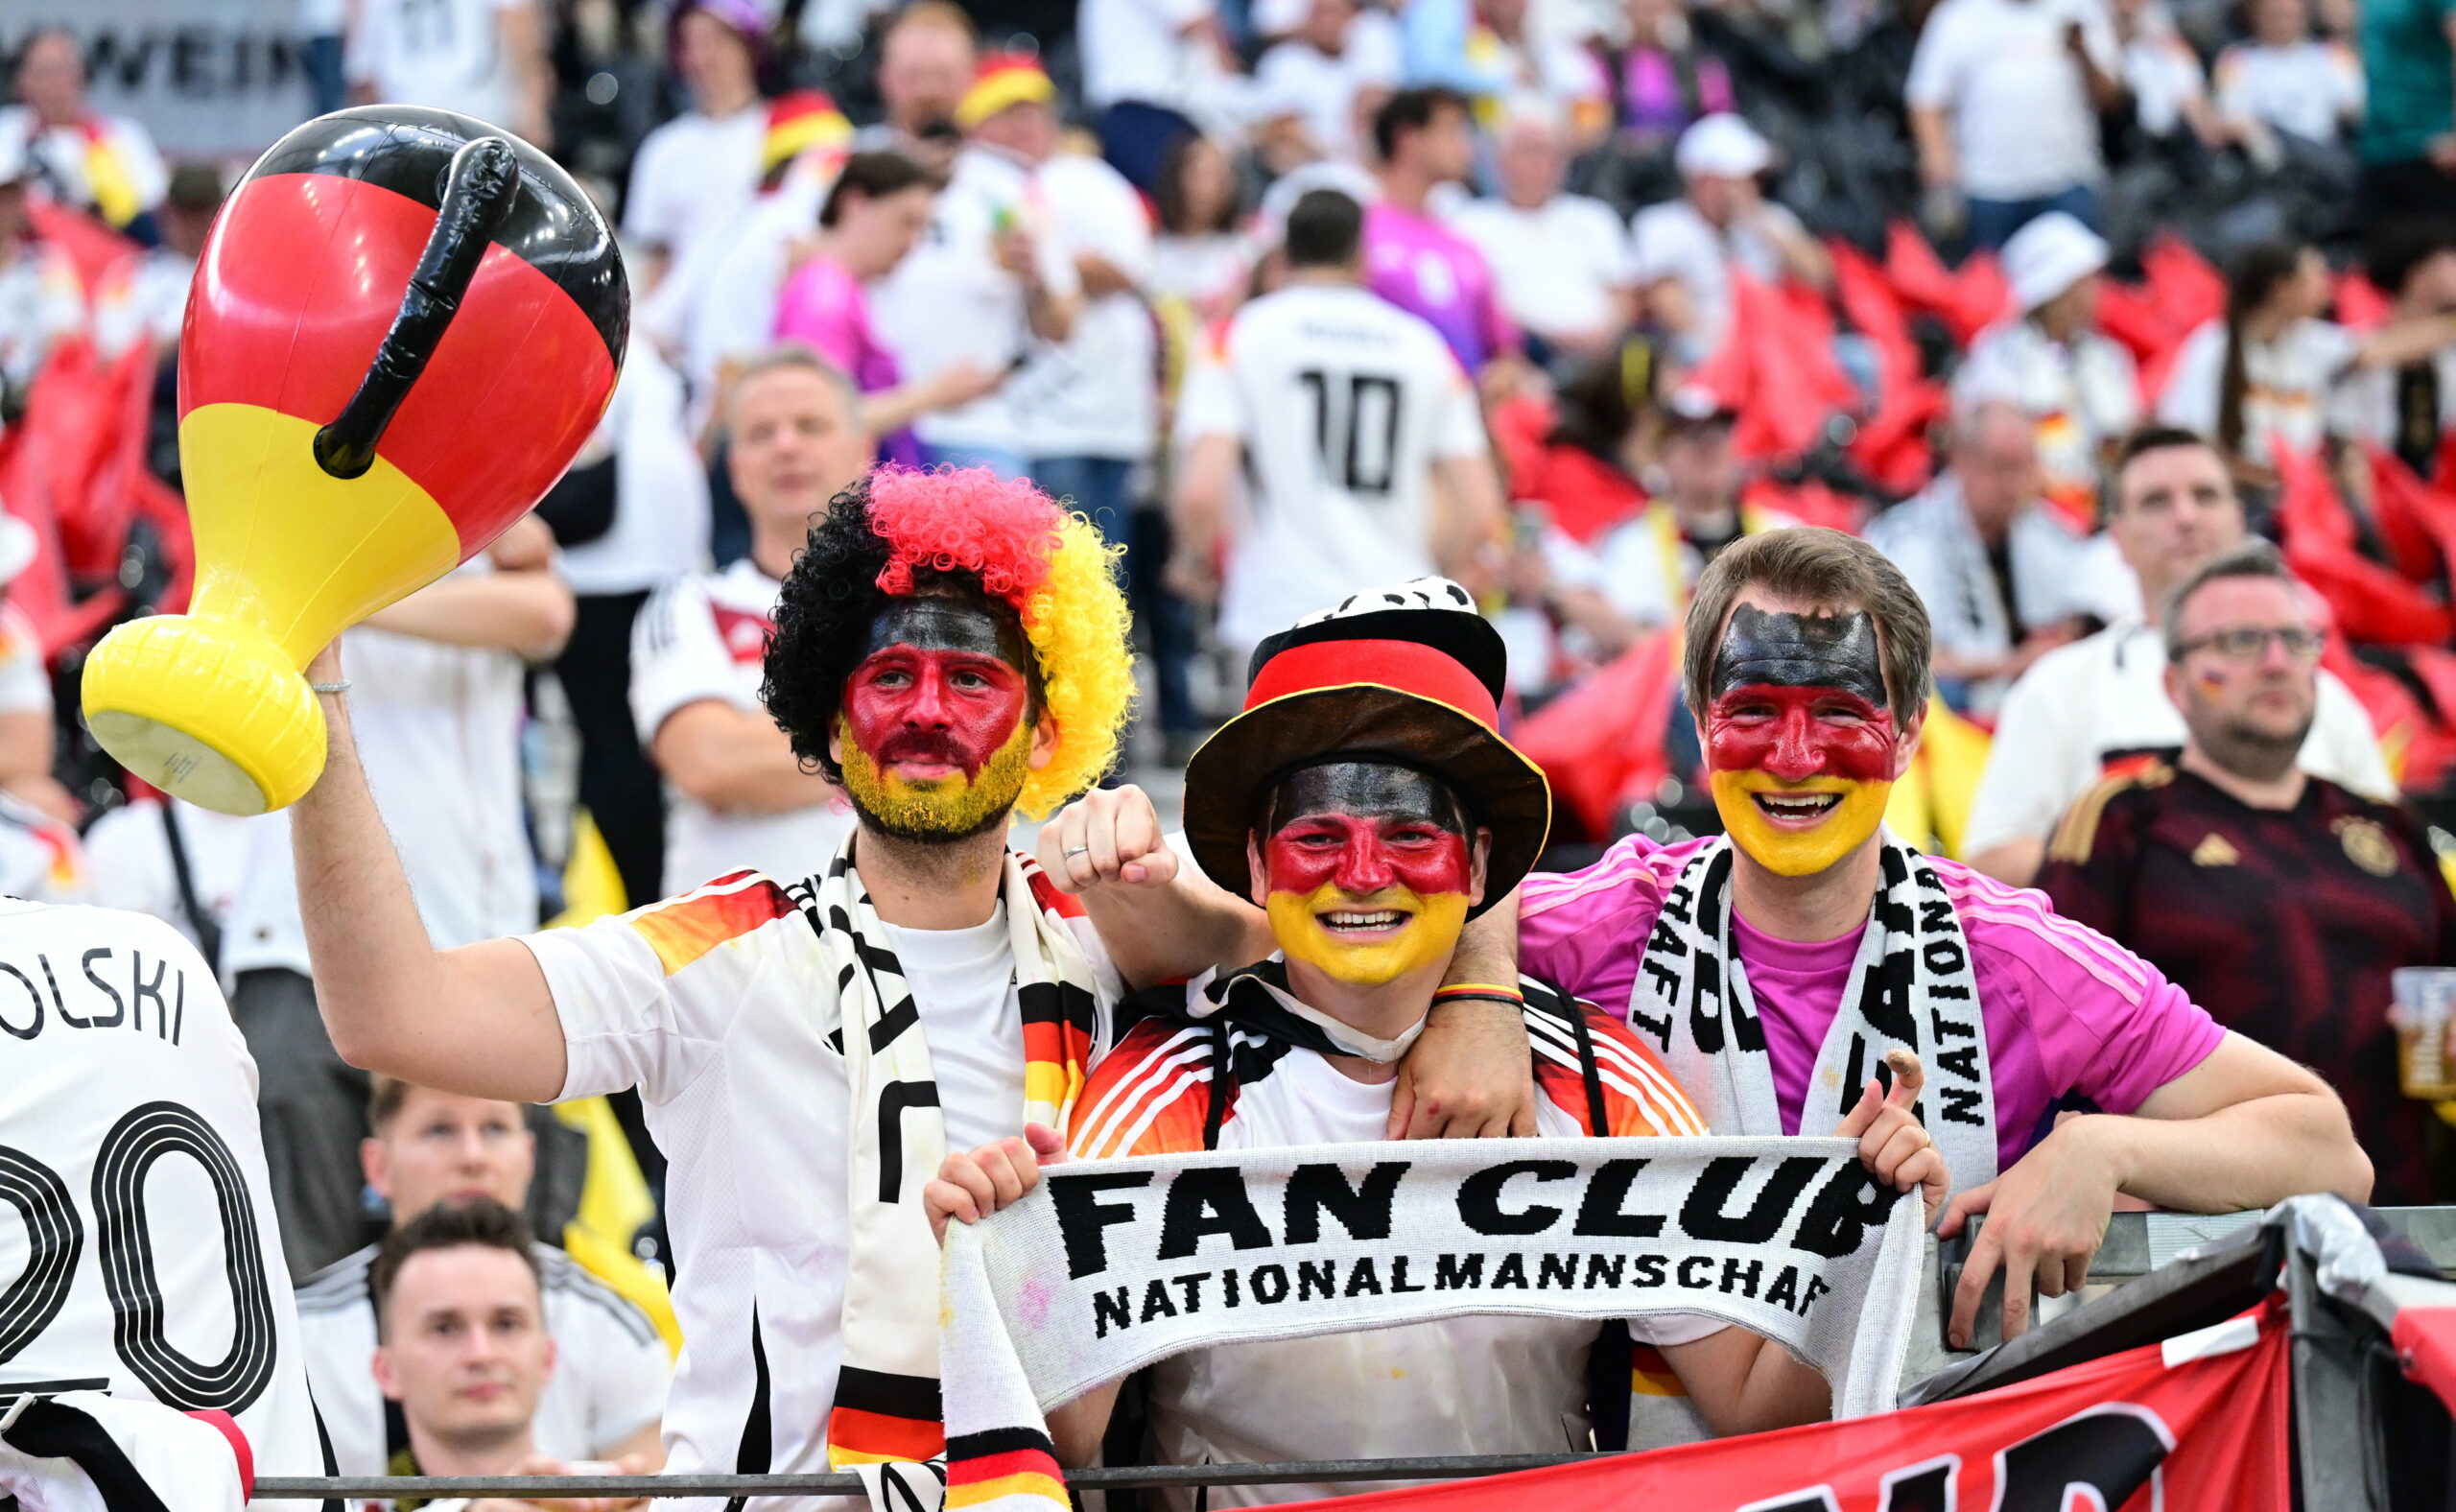 DFB-Fans in Frankfurt